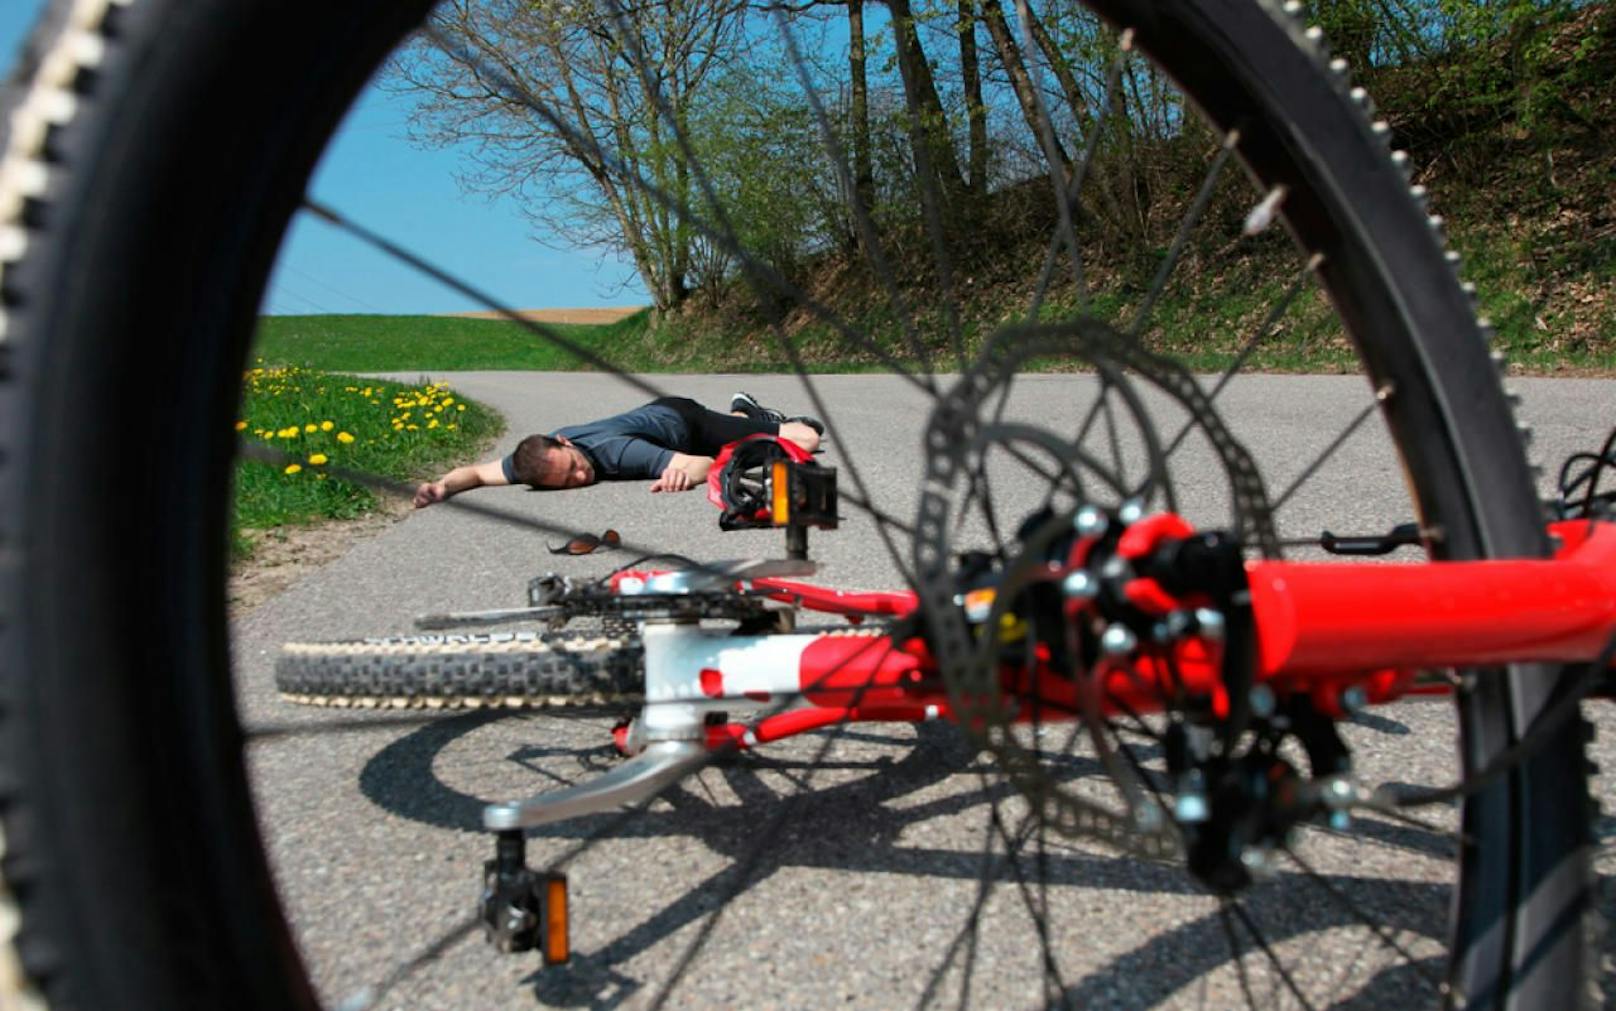 Insekt im Gesicht: Biker krachte auf Radfahrer